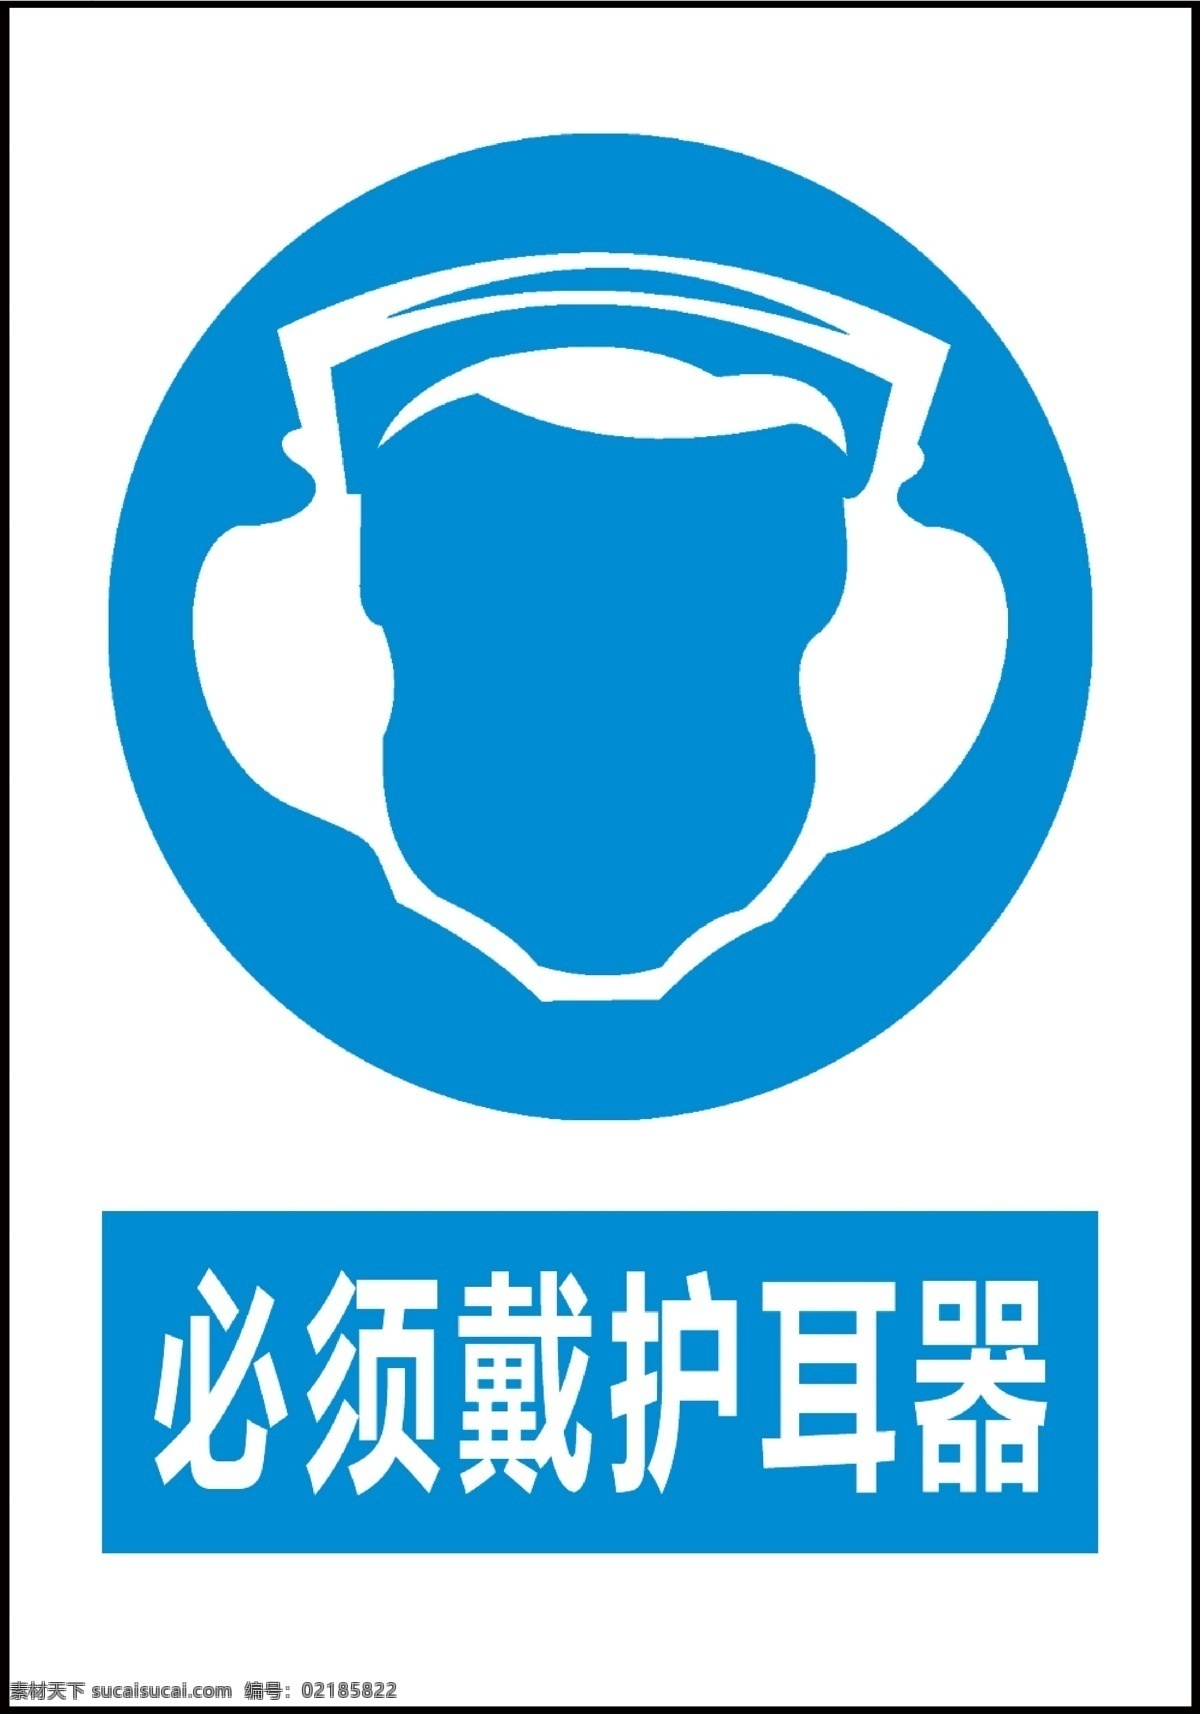 必须戴护耳器 戴护耳器 护耳器标识 标识 护耳 标志图标 公共标识标志